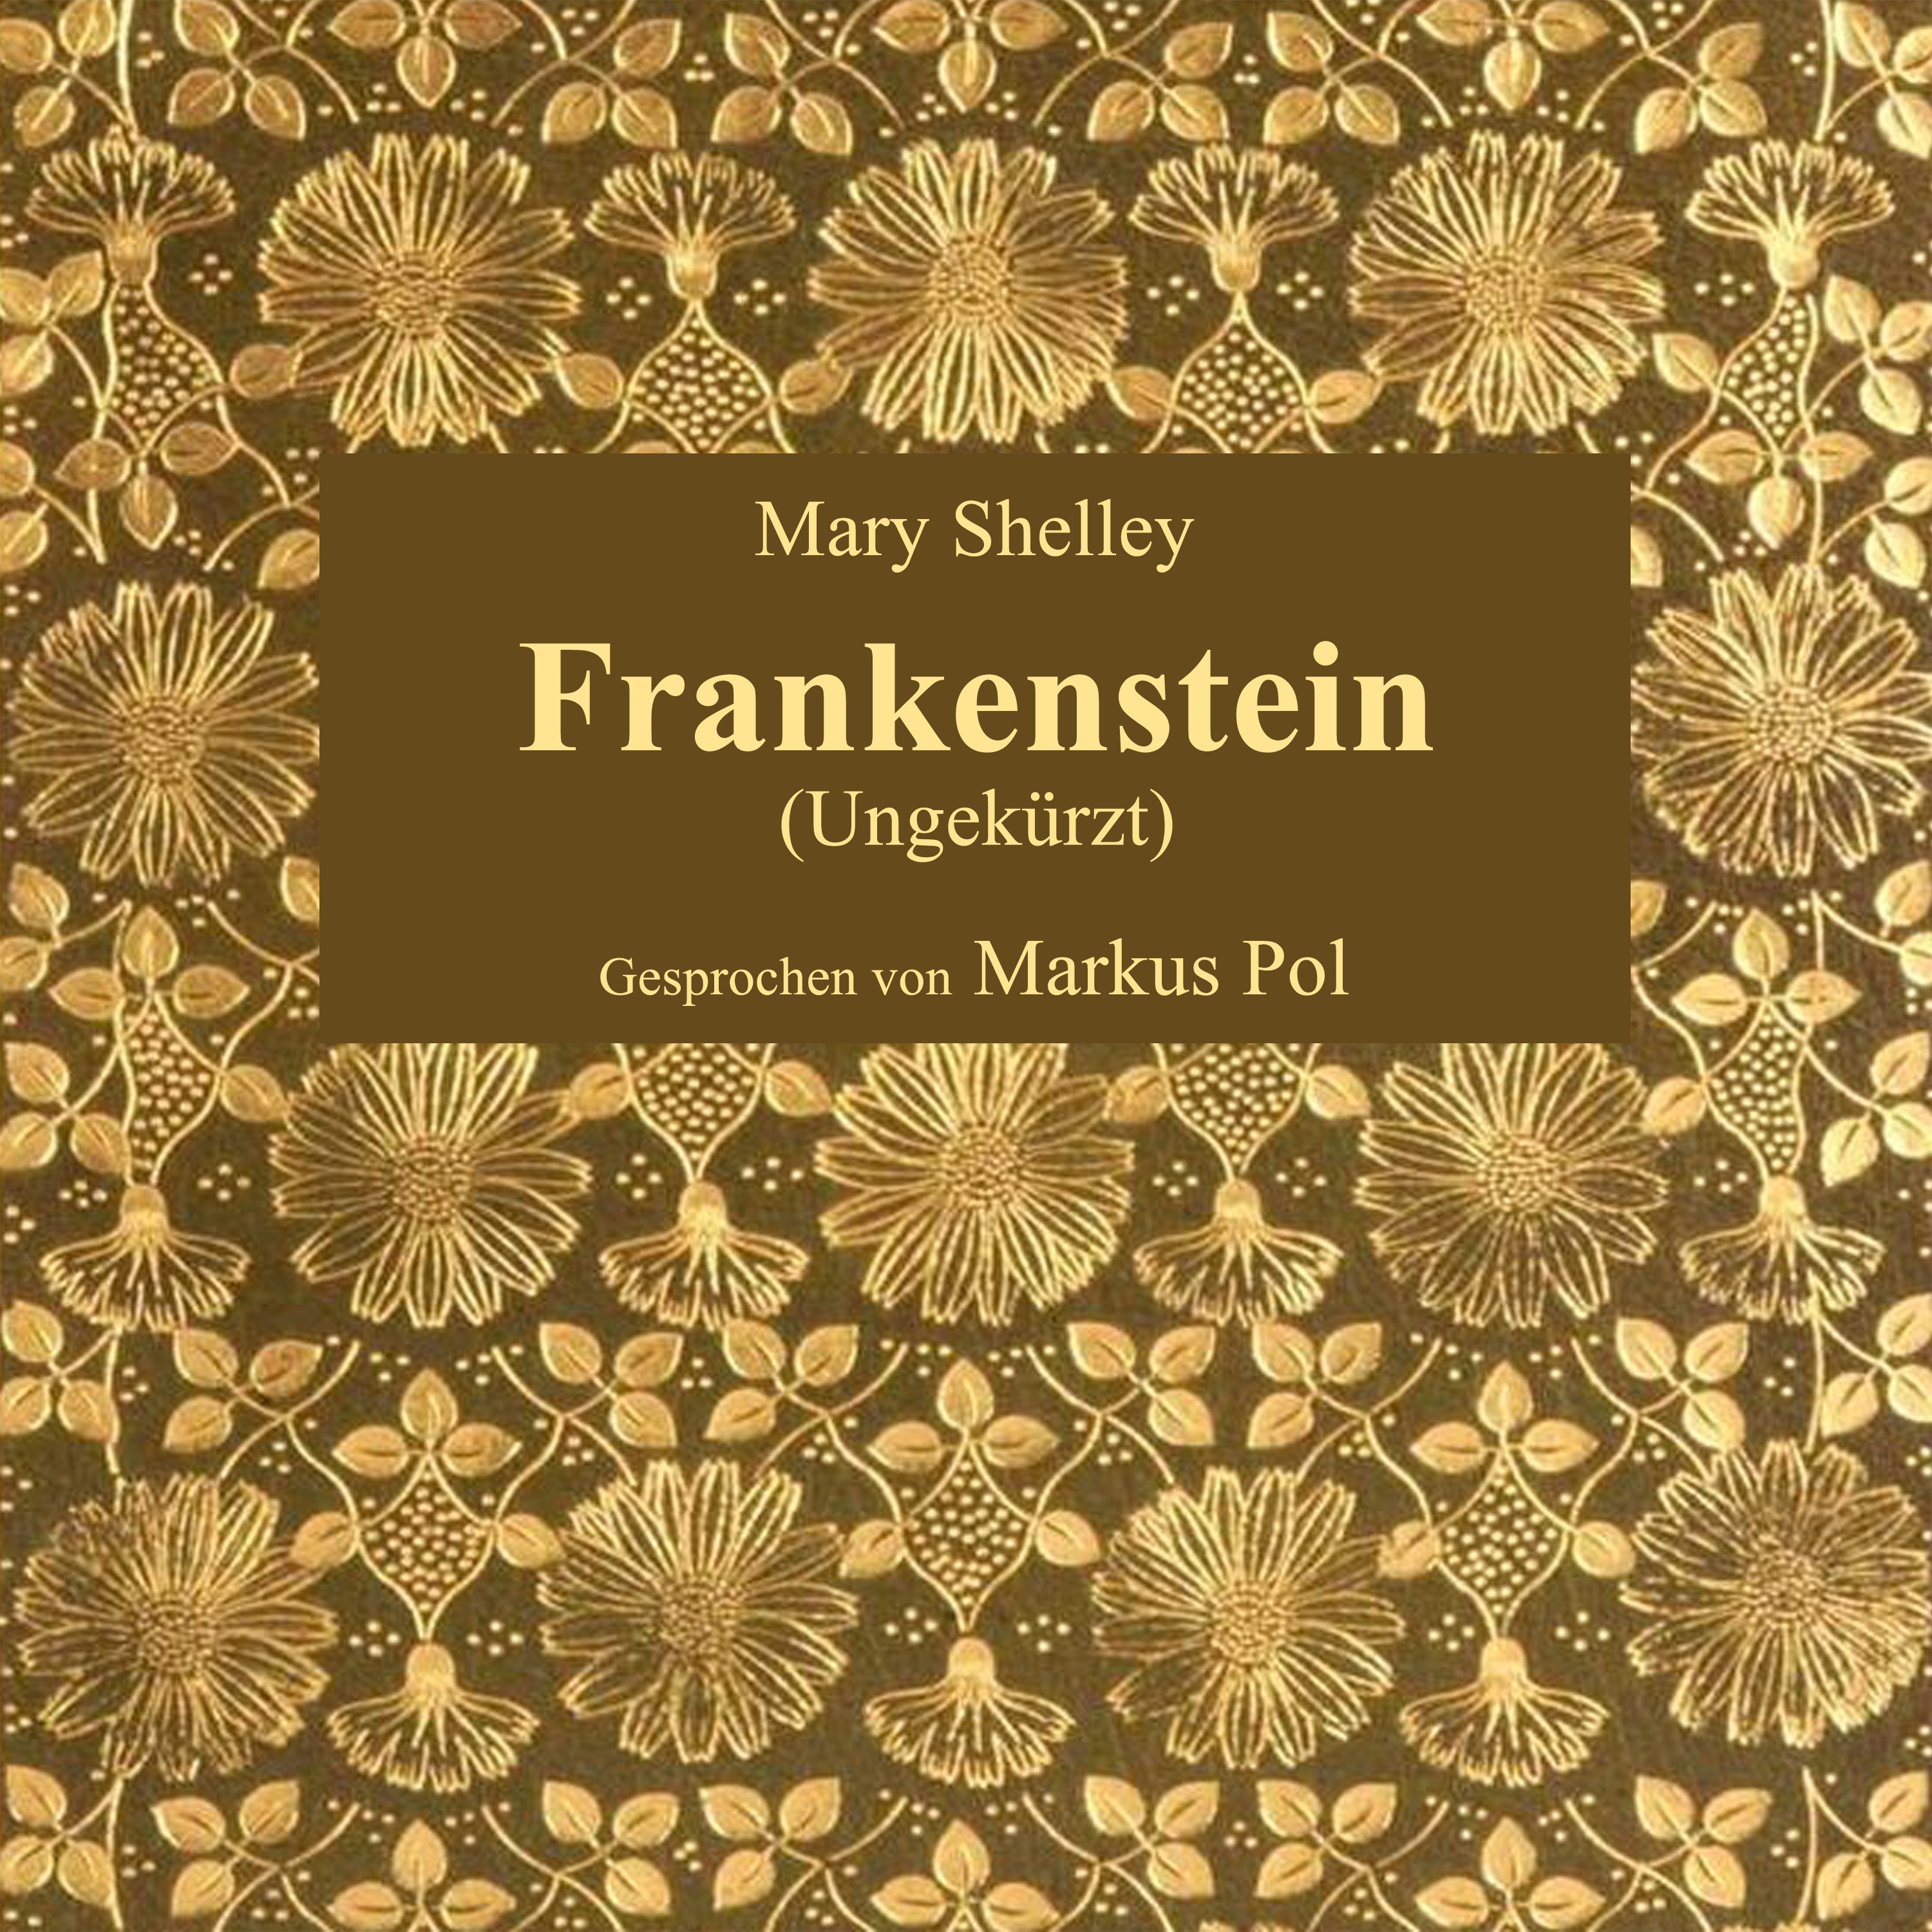 Kapitel 2: Frankenstein (Teil 1)